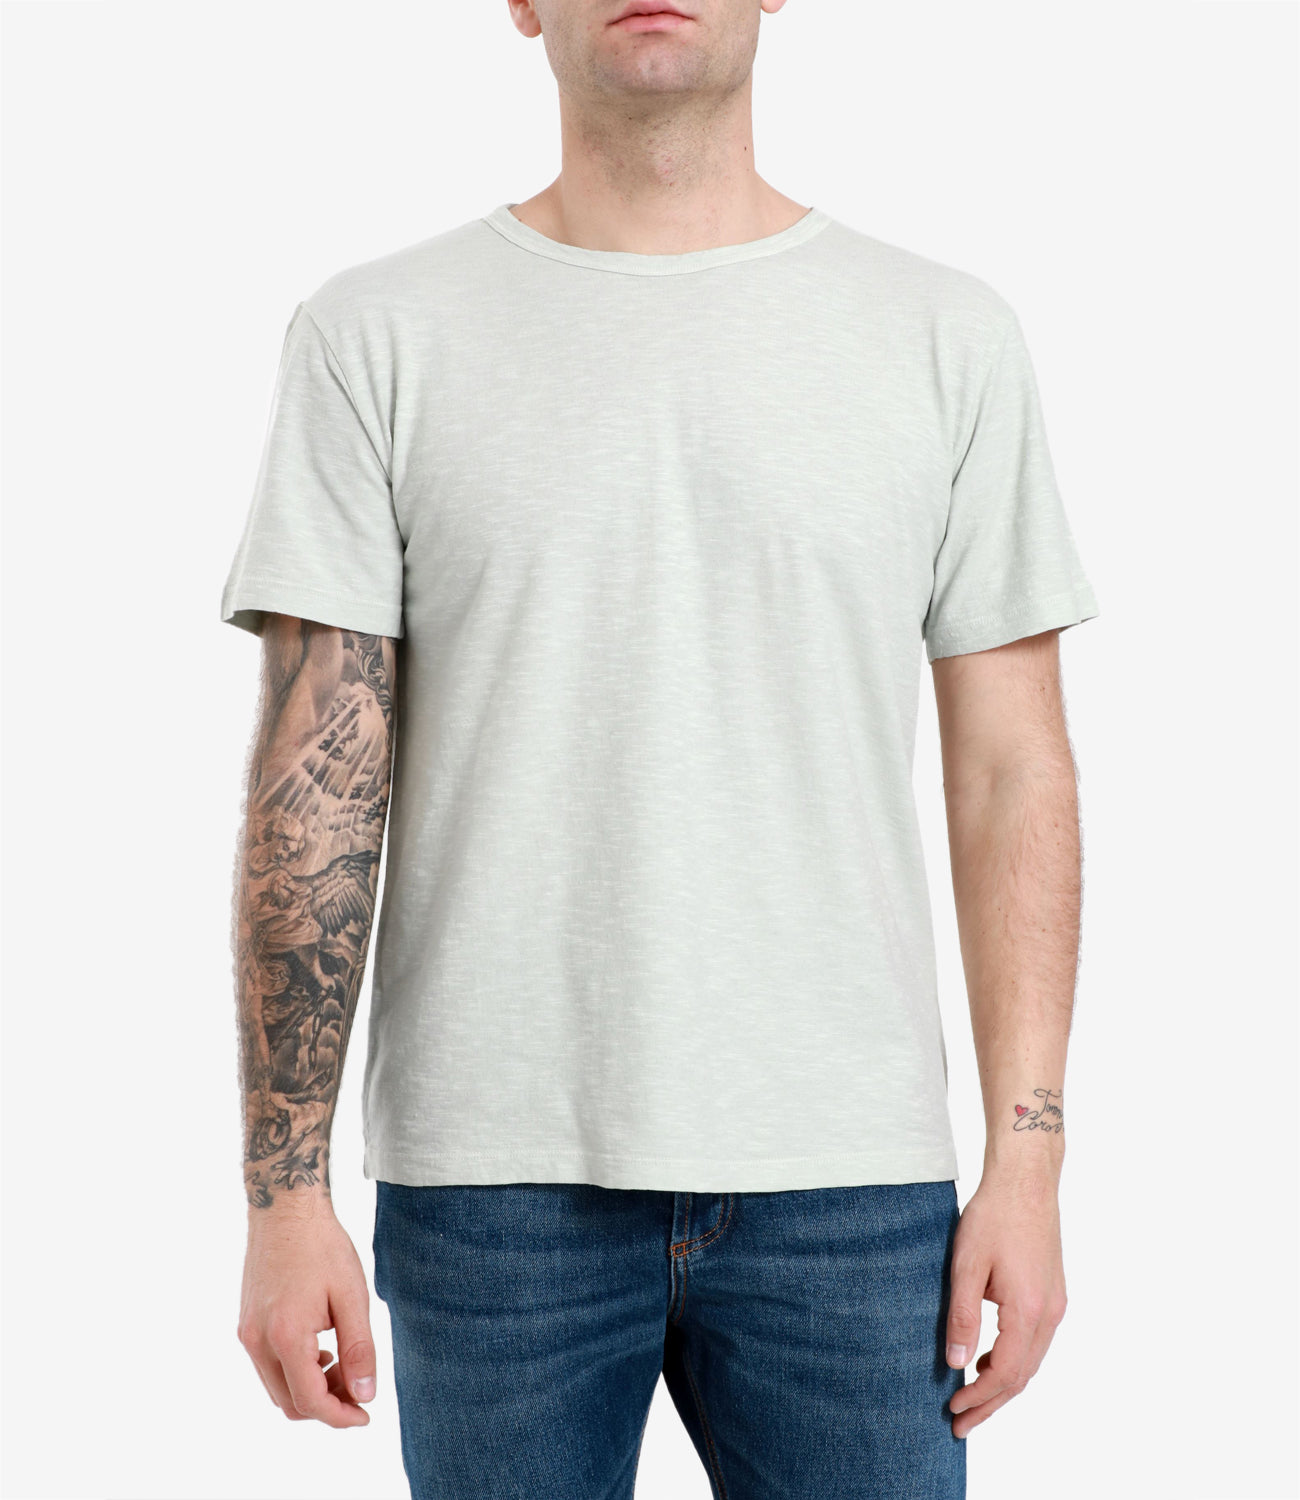 Grifoni | T-Shirt Beige Stucco